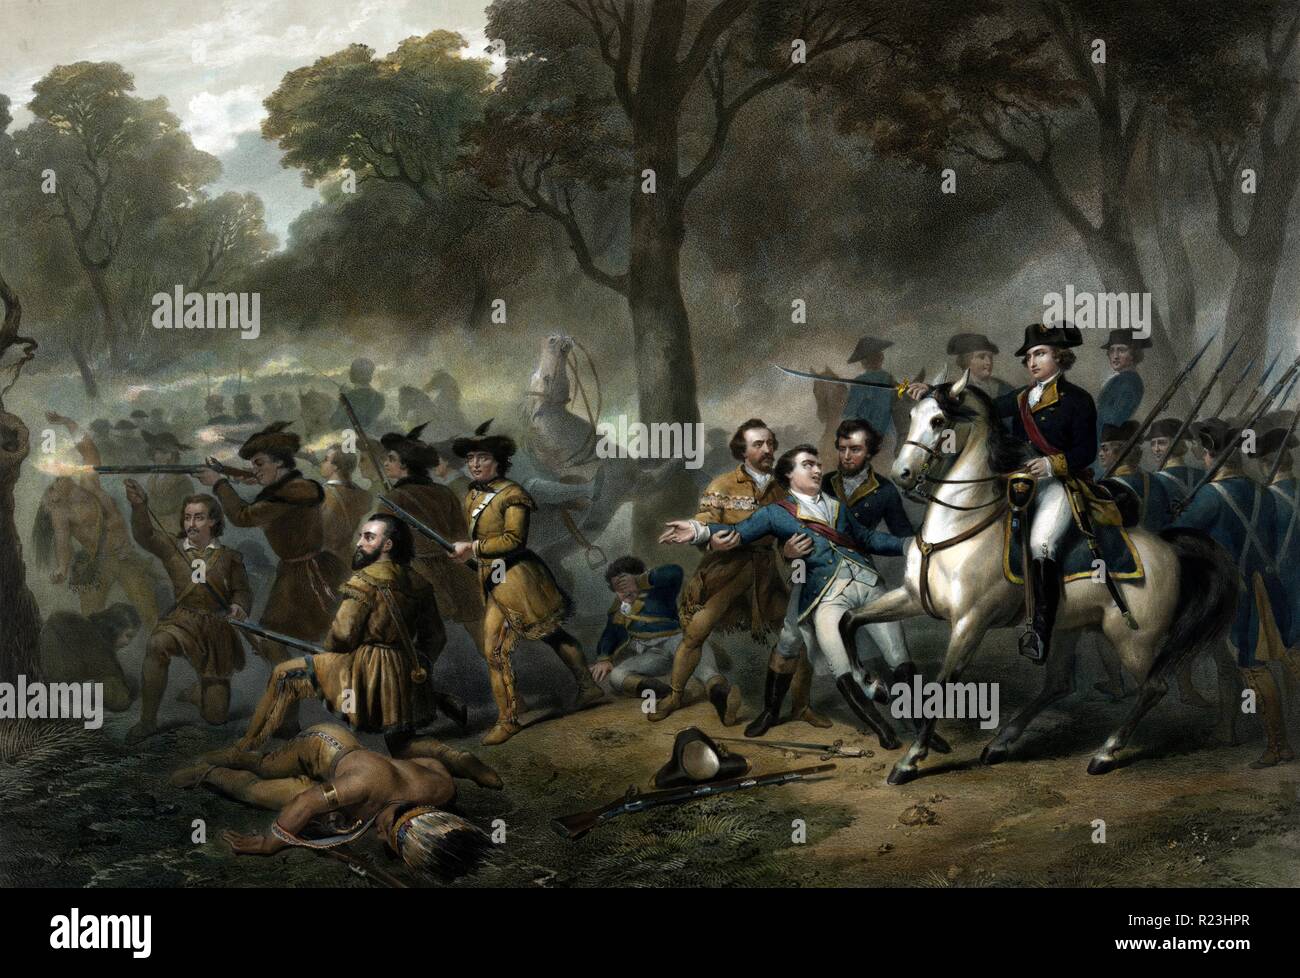 Das Leben von George Washington - Der Soldat. George Washington auf Pferd, Soldaten während der Schlacht am Monongahela (9. Juli 1755). c) 1854 Stockfoto